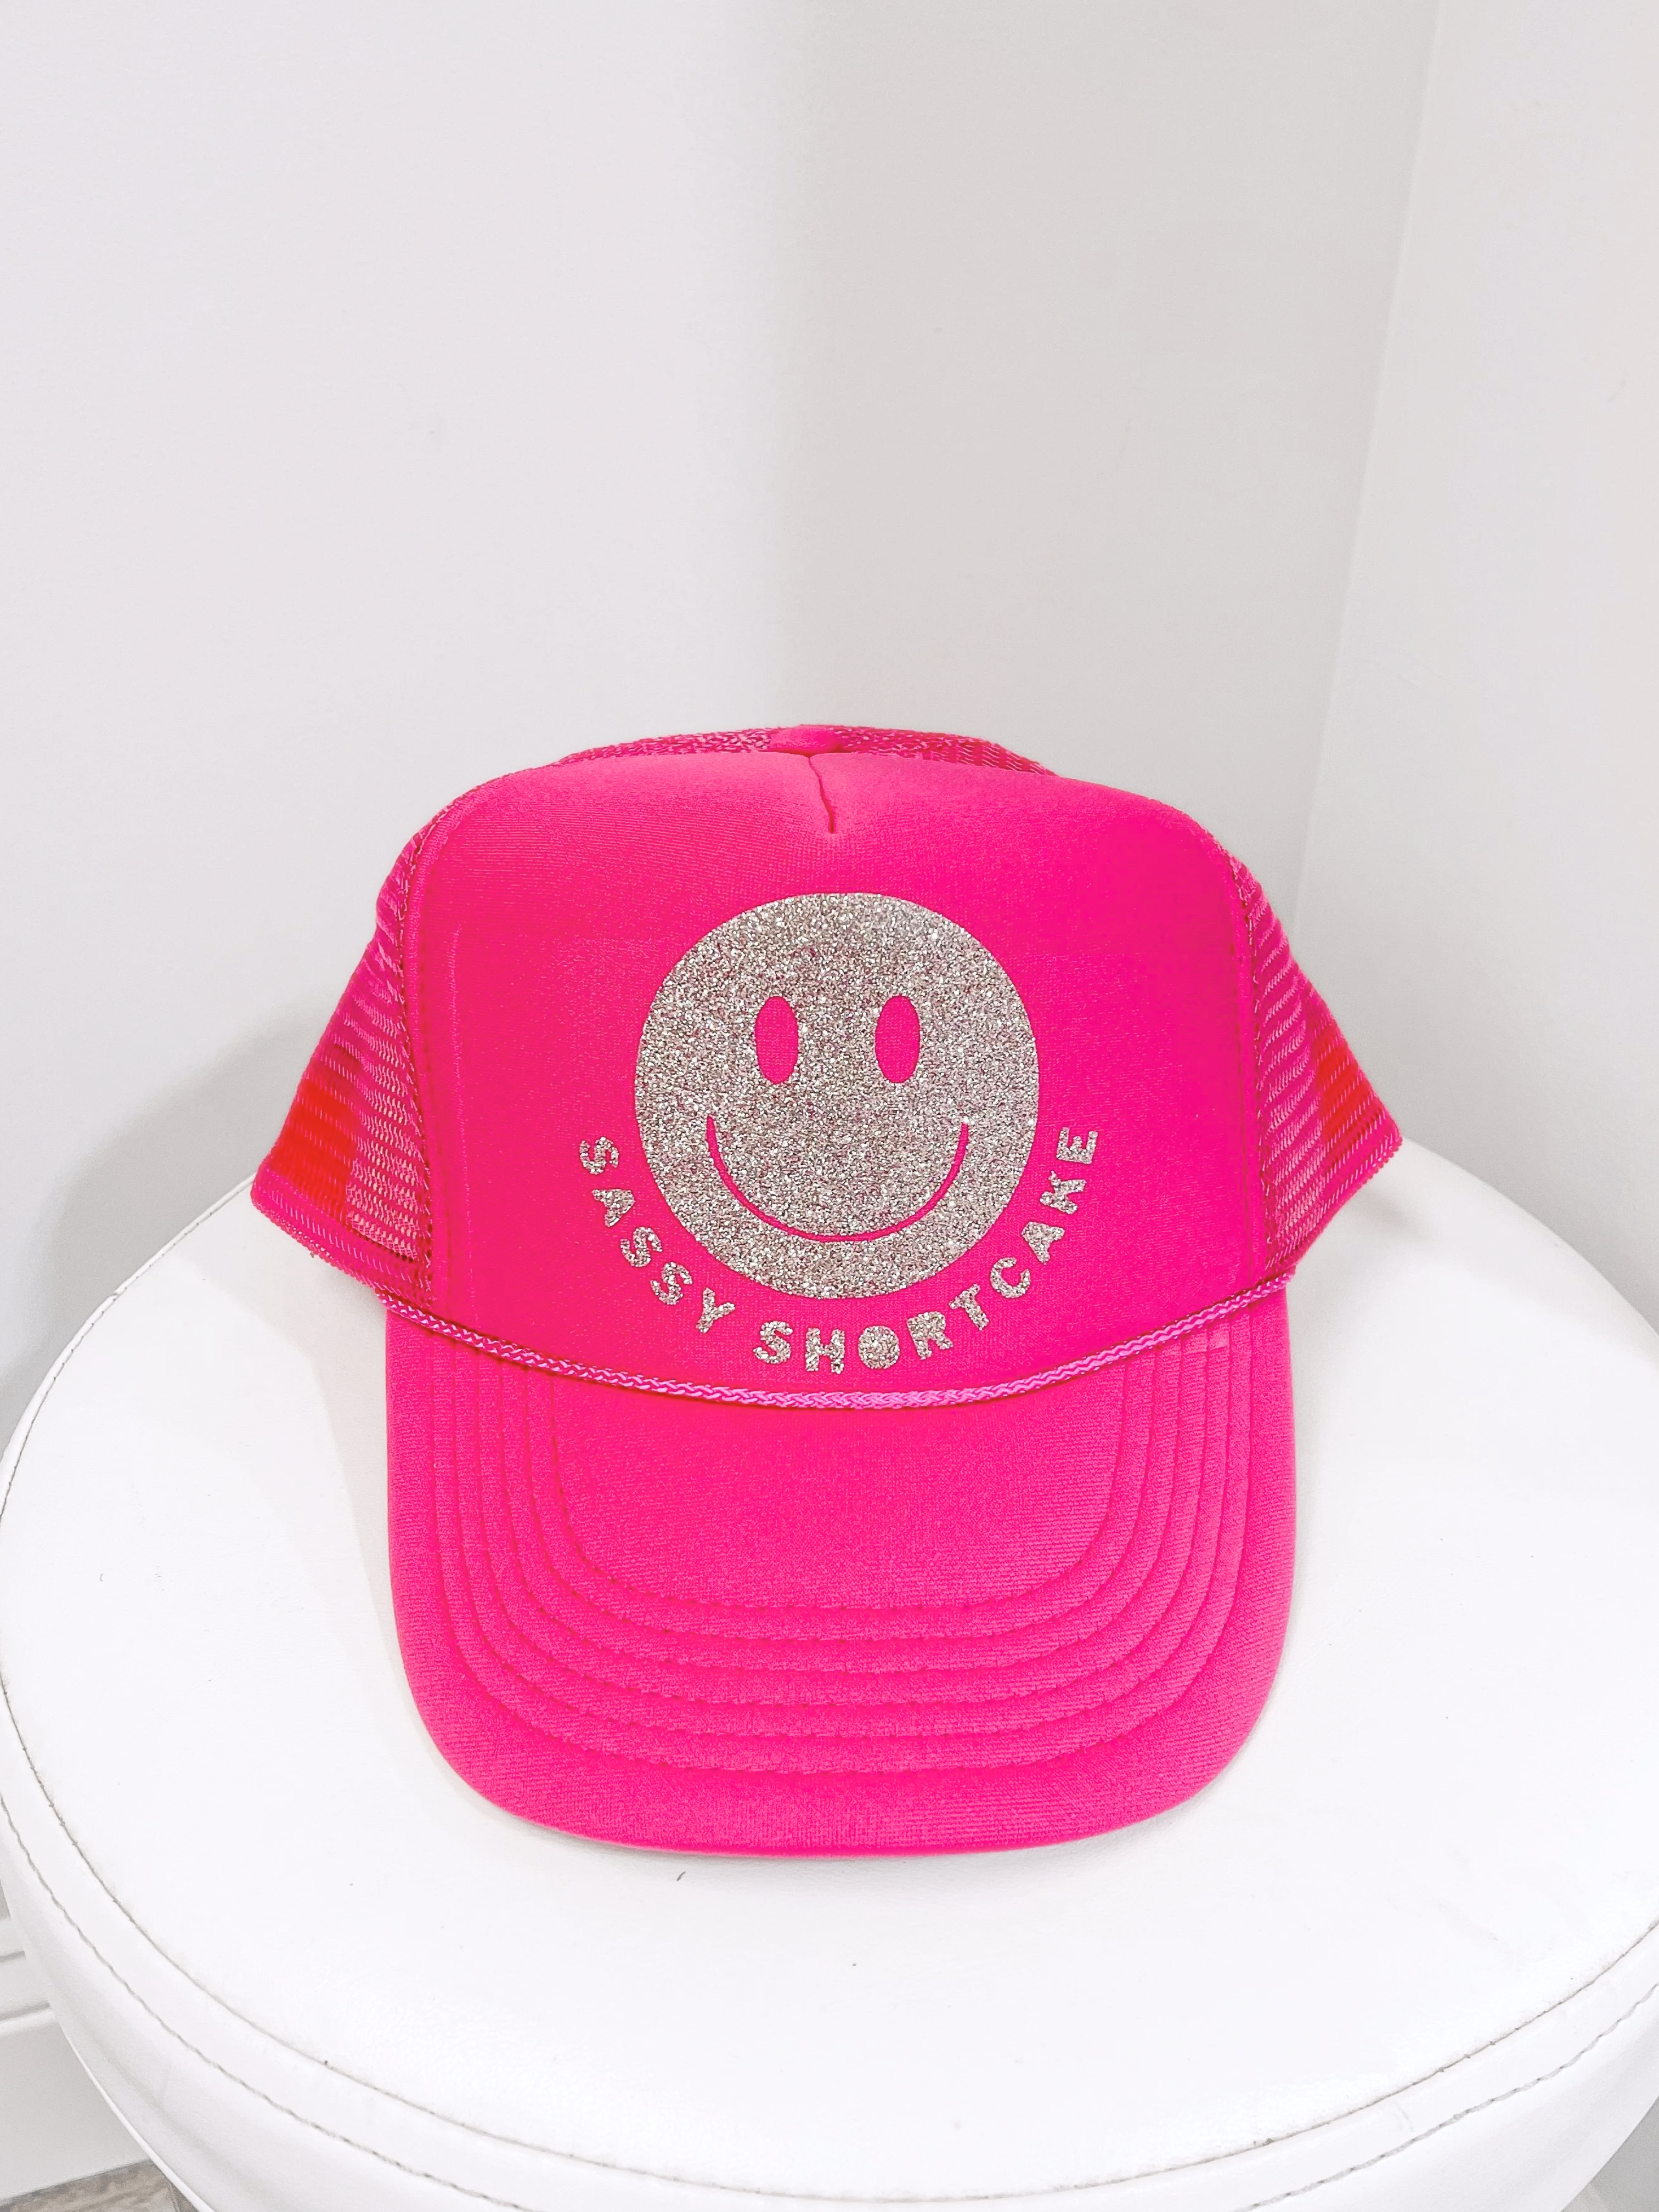 Smiley Sassy Shortcake Pink Hat | Sassy Shortcake | sassyshortcake.com